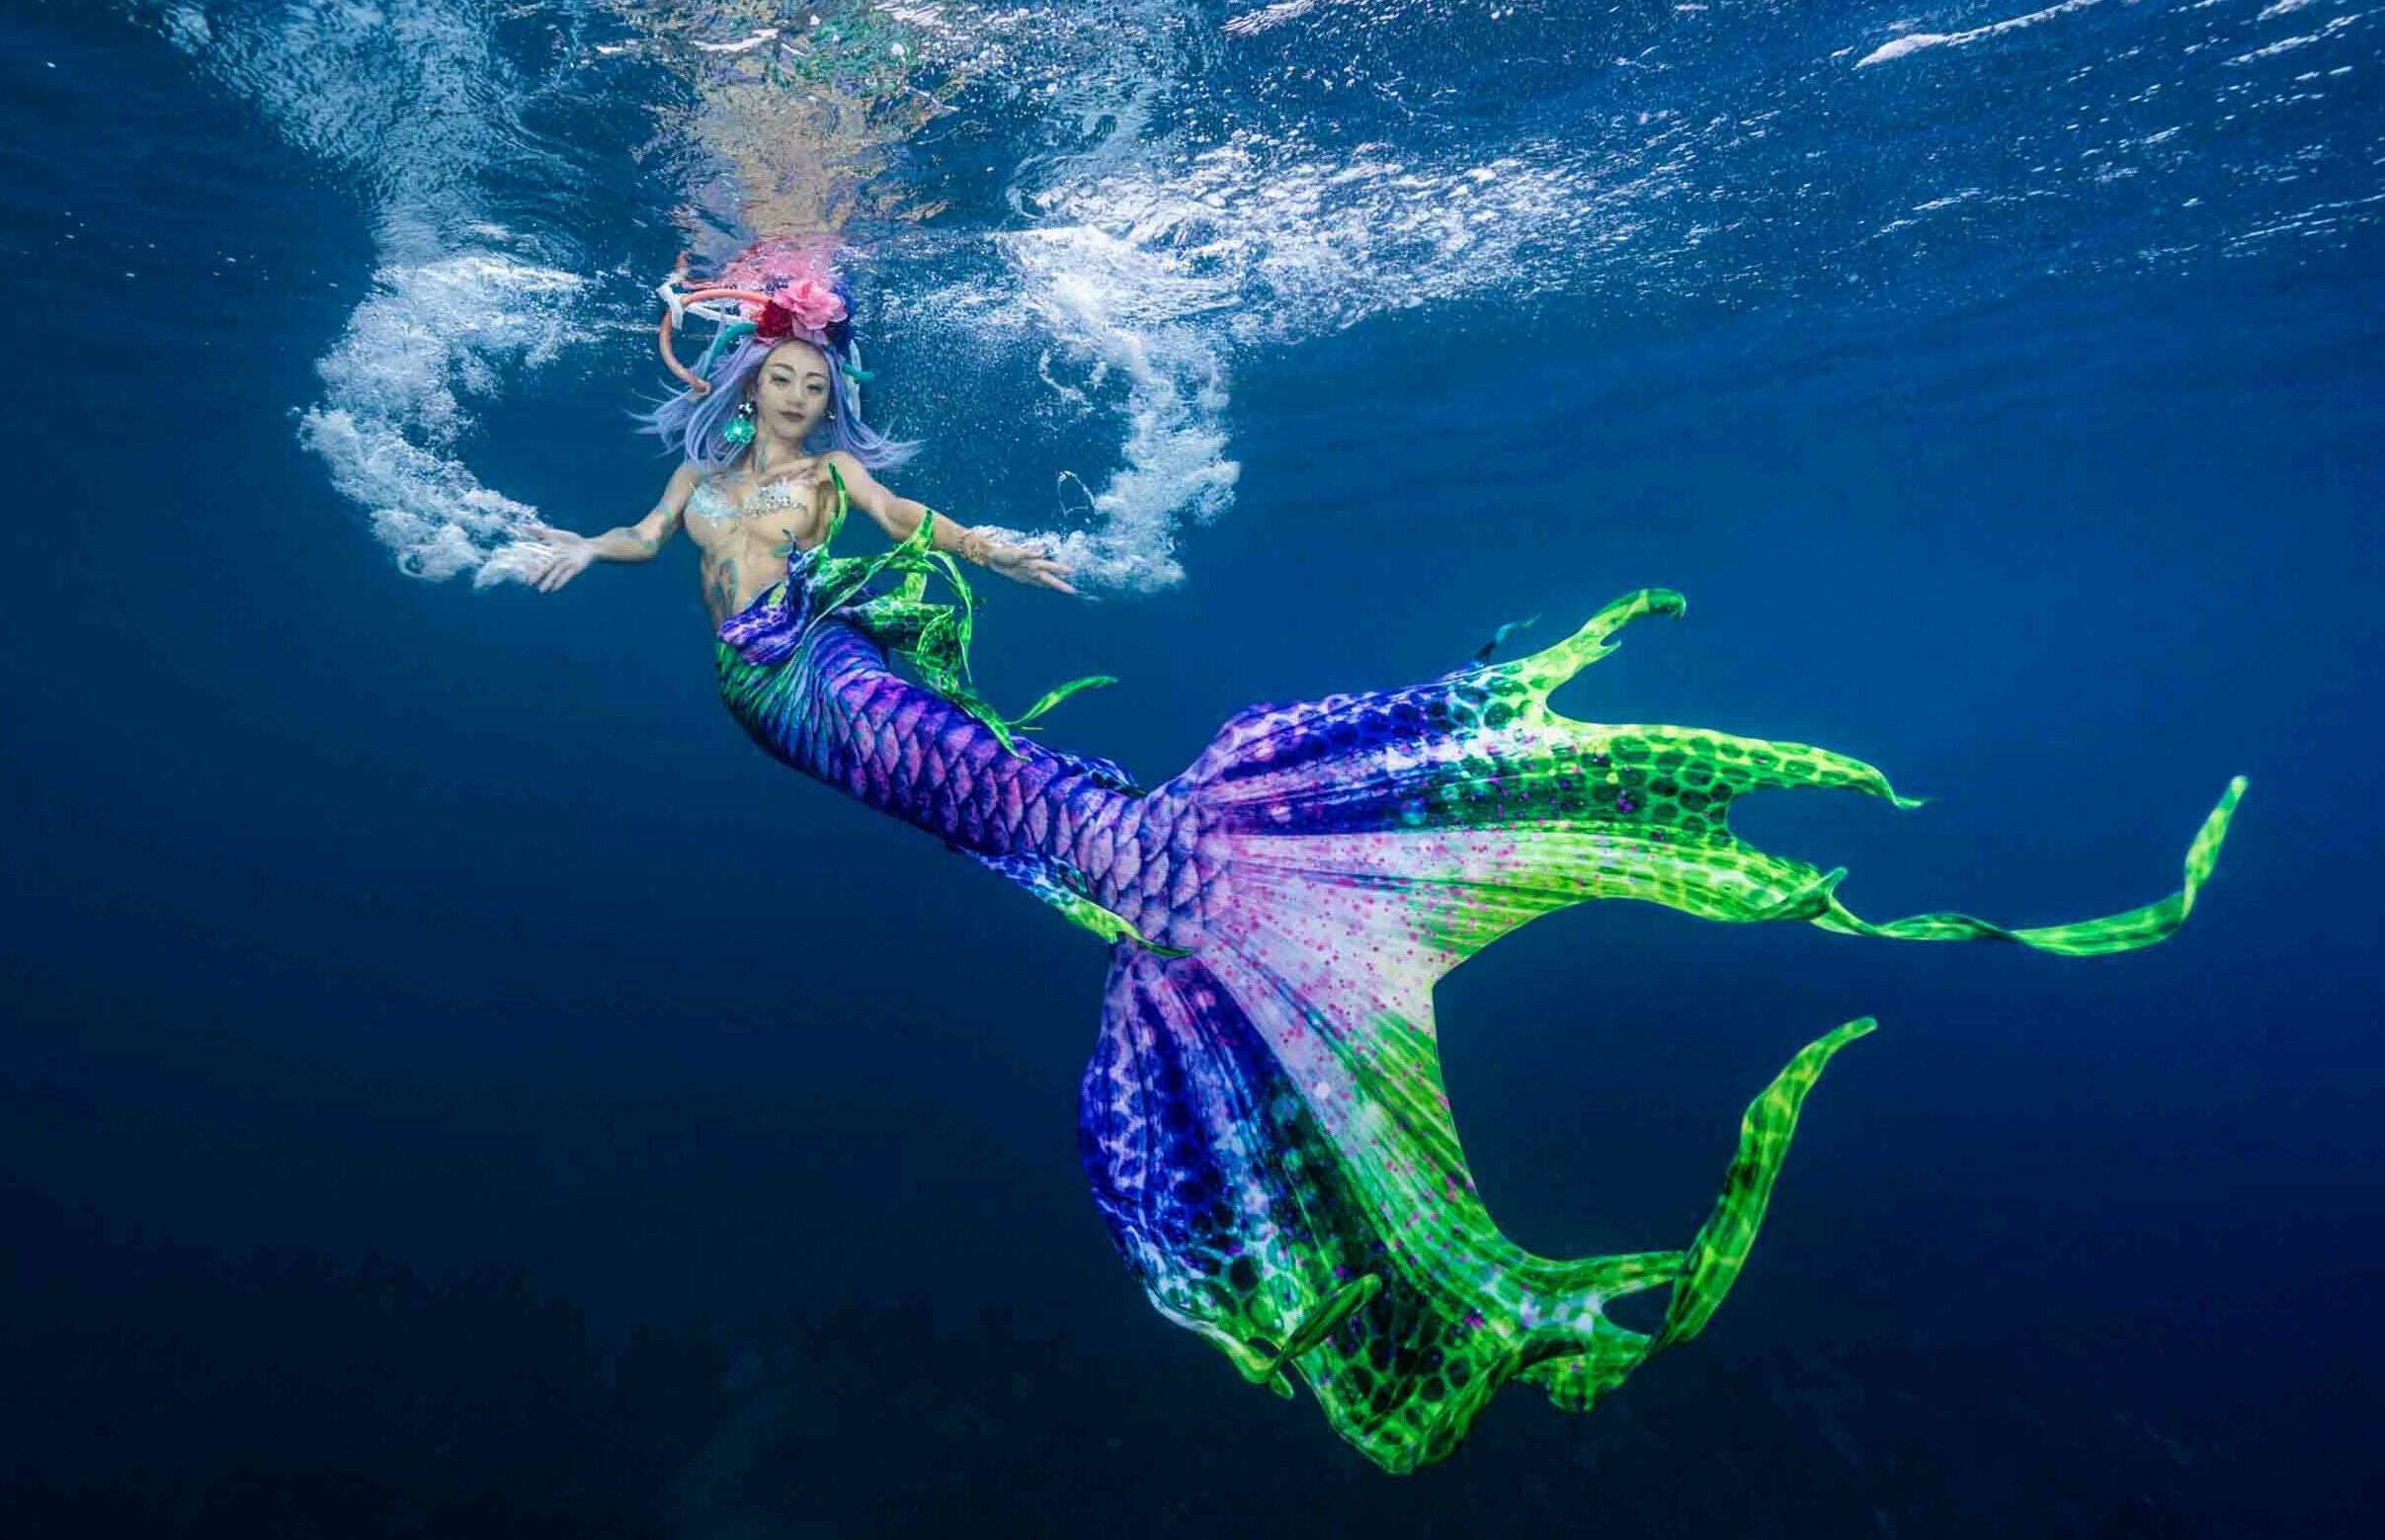 海裡見潛水俱樂部 水肺潛水 scubadiving 自由潛水 freediving padi 美人魚 mermaid 9 e1616695178353